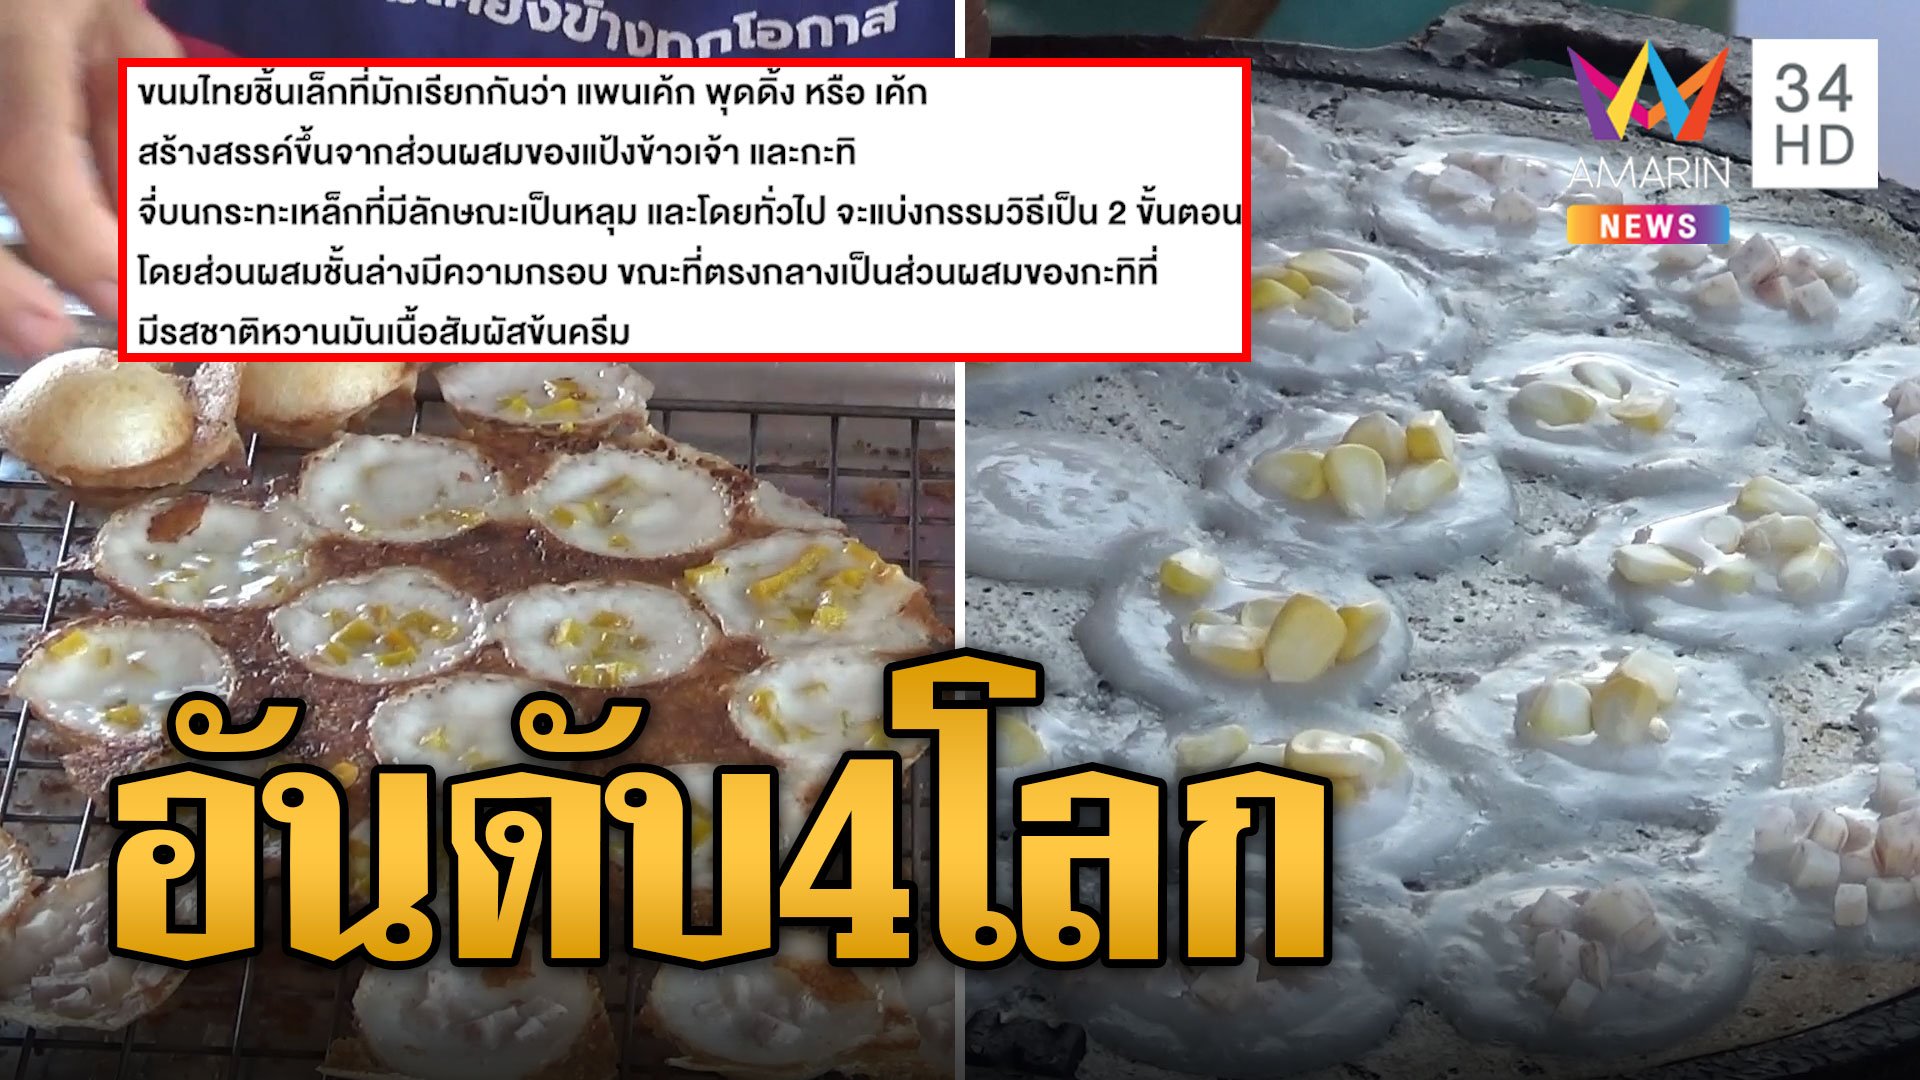 ขนมครกไทย อันดับ 4 แพนเค้กดีสุดของโลก | ข่าวเที่ยงอมรินทร์ | 12 ก.พ. 67 | AMARIN TVHD34